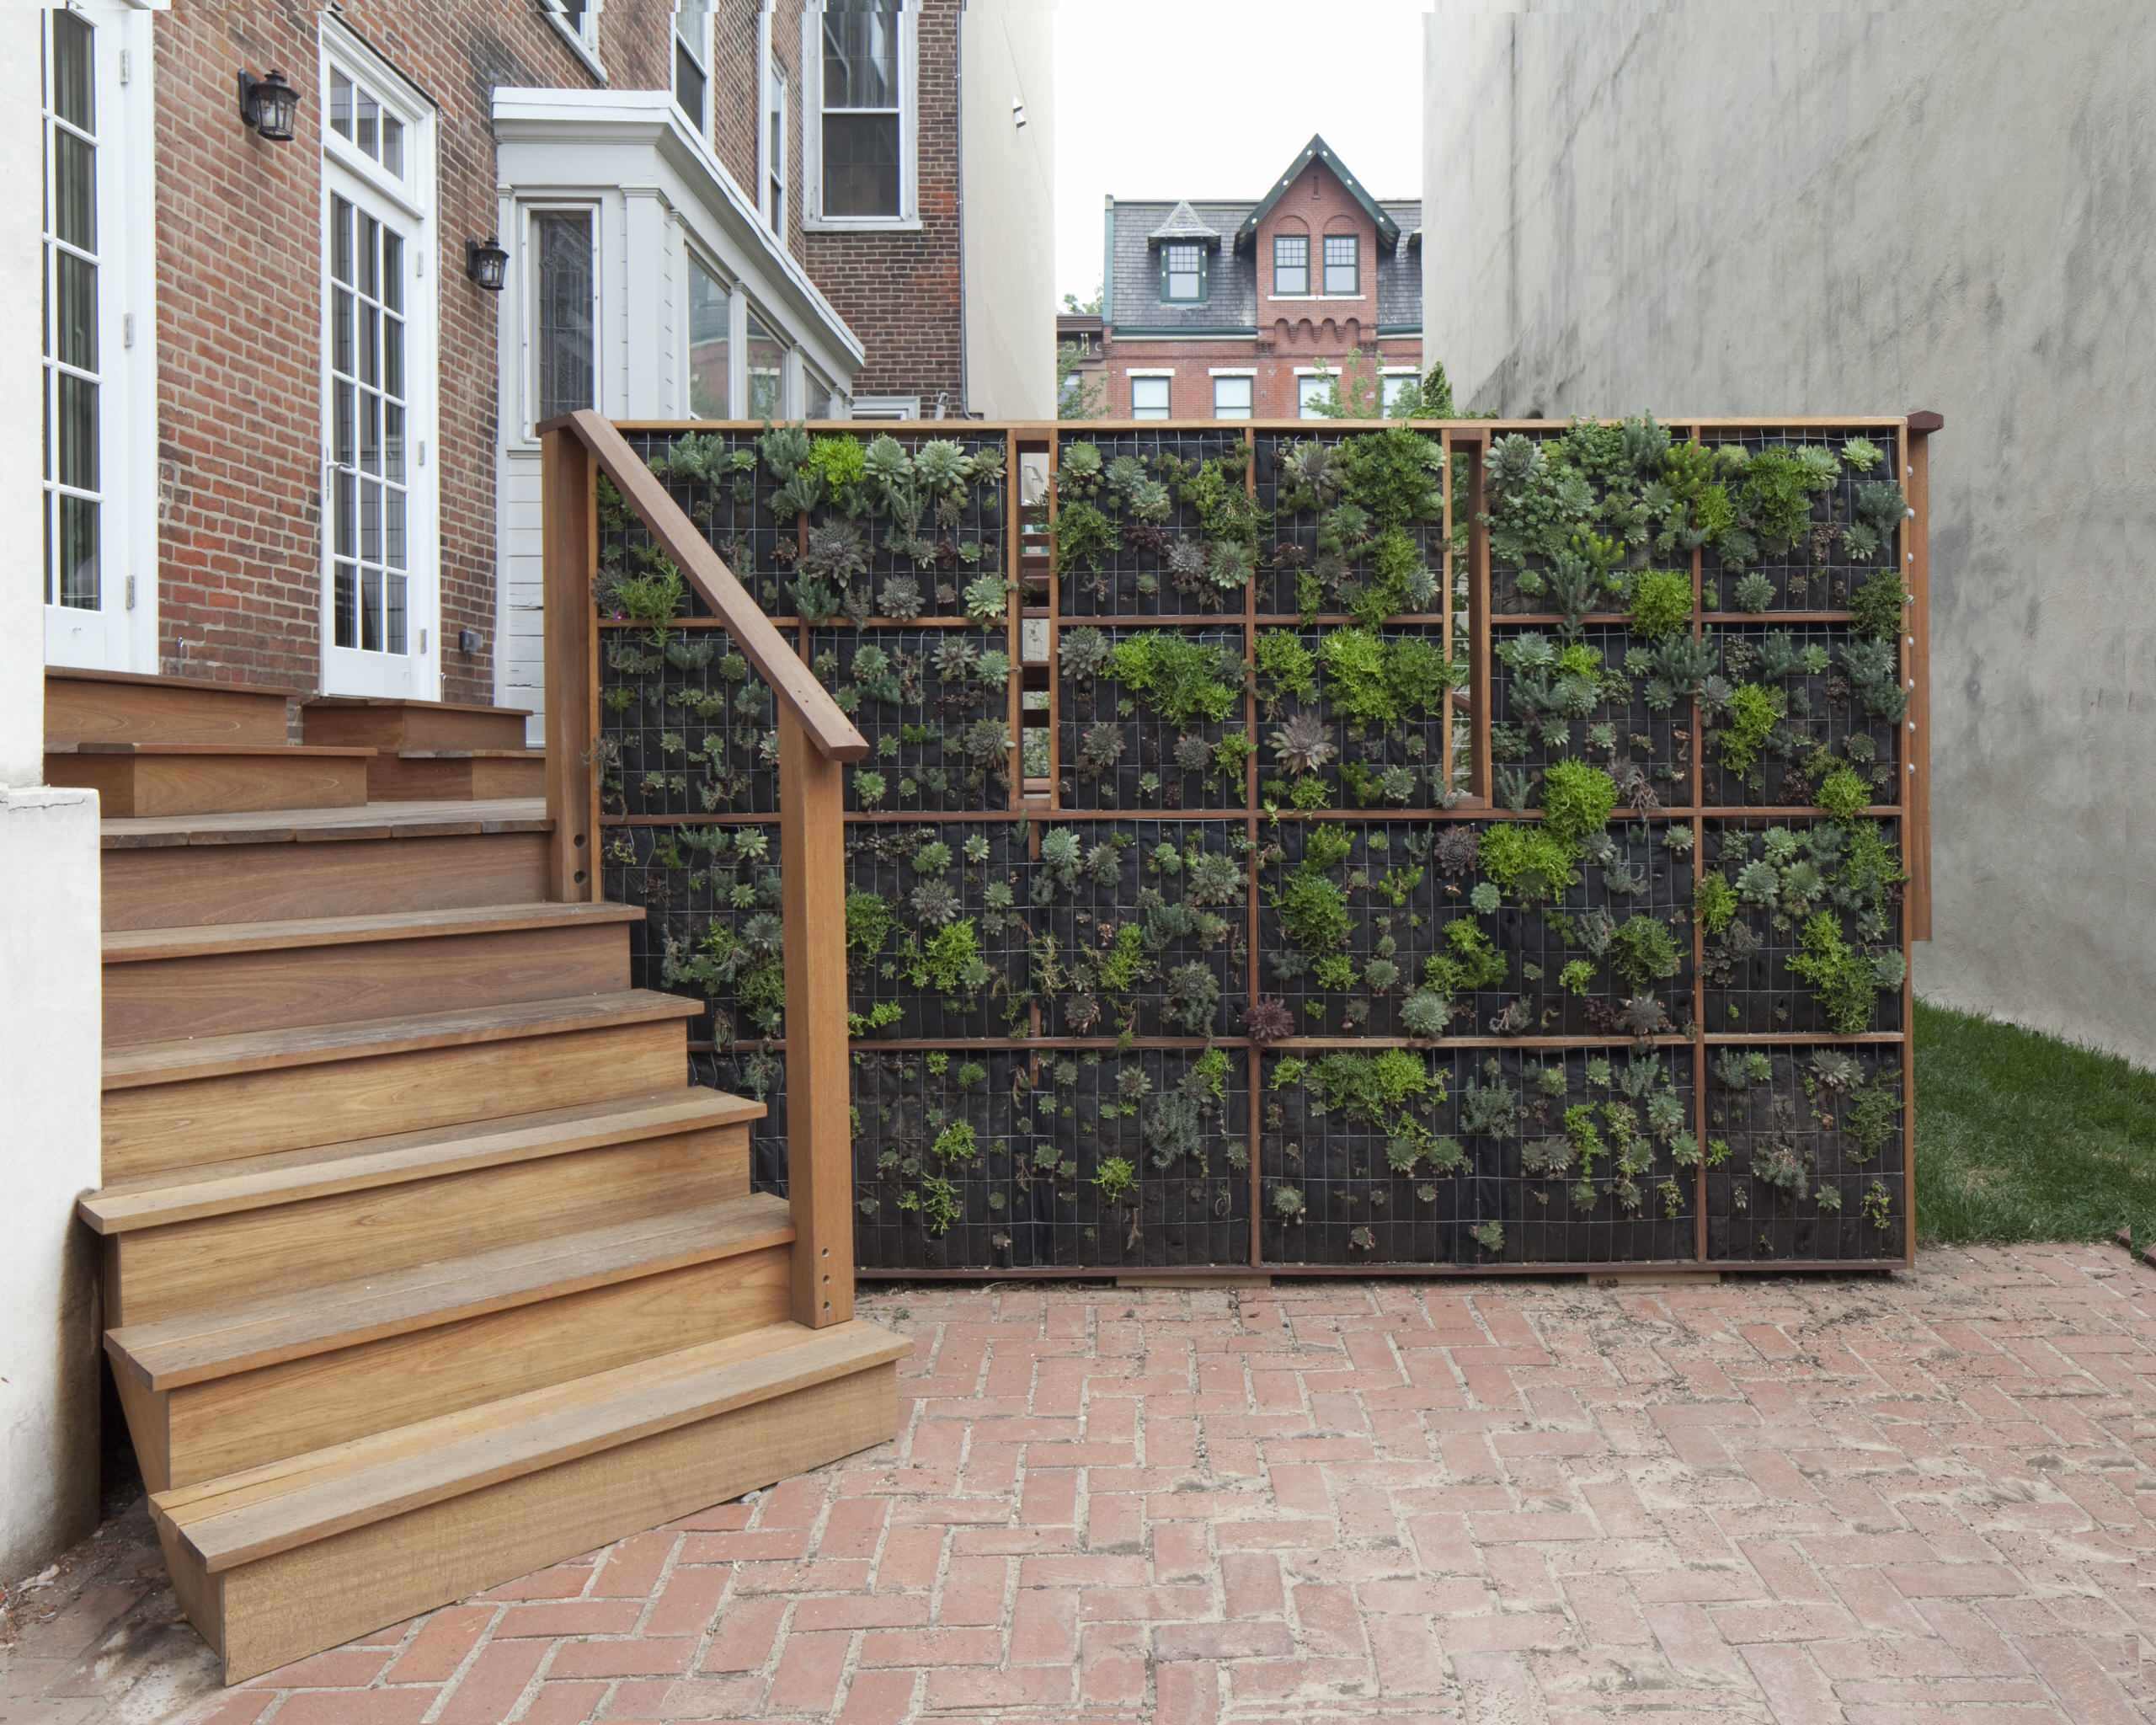 在墙面种植攀爬或垂吊的藤本植物,这类绿化形式简便易行,造价较低